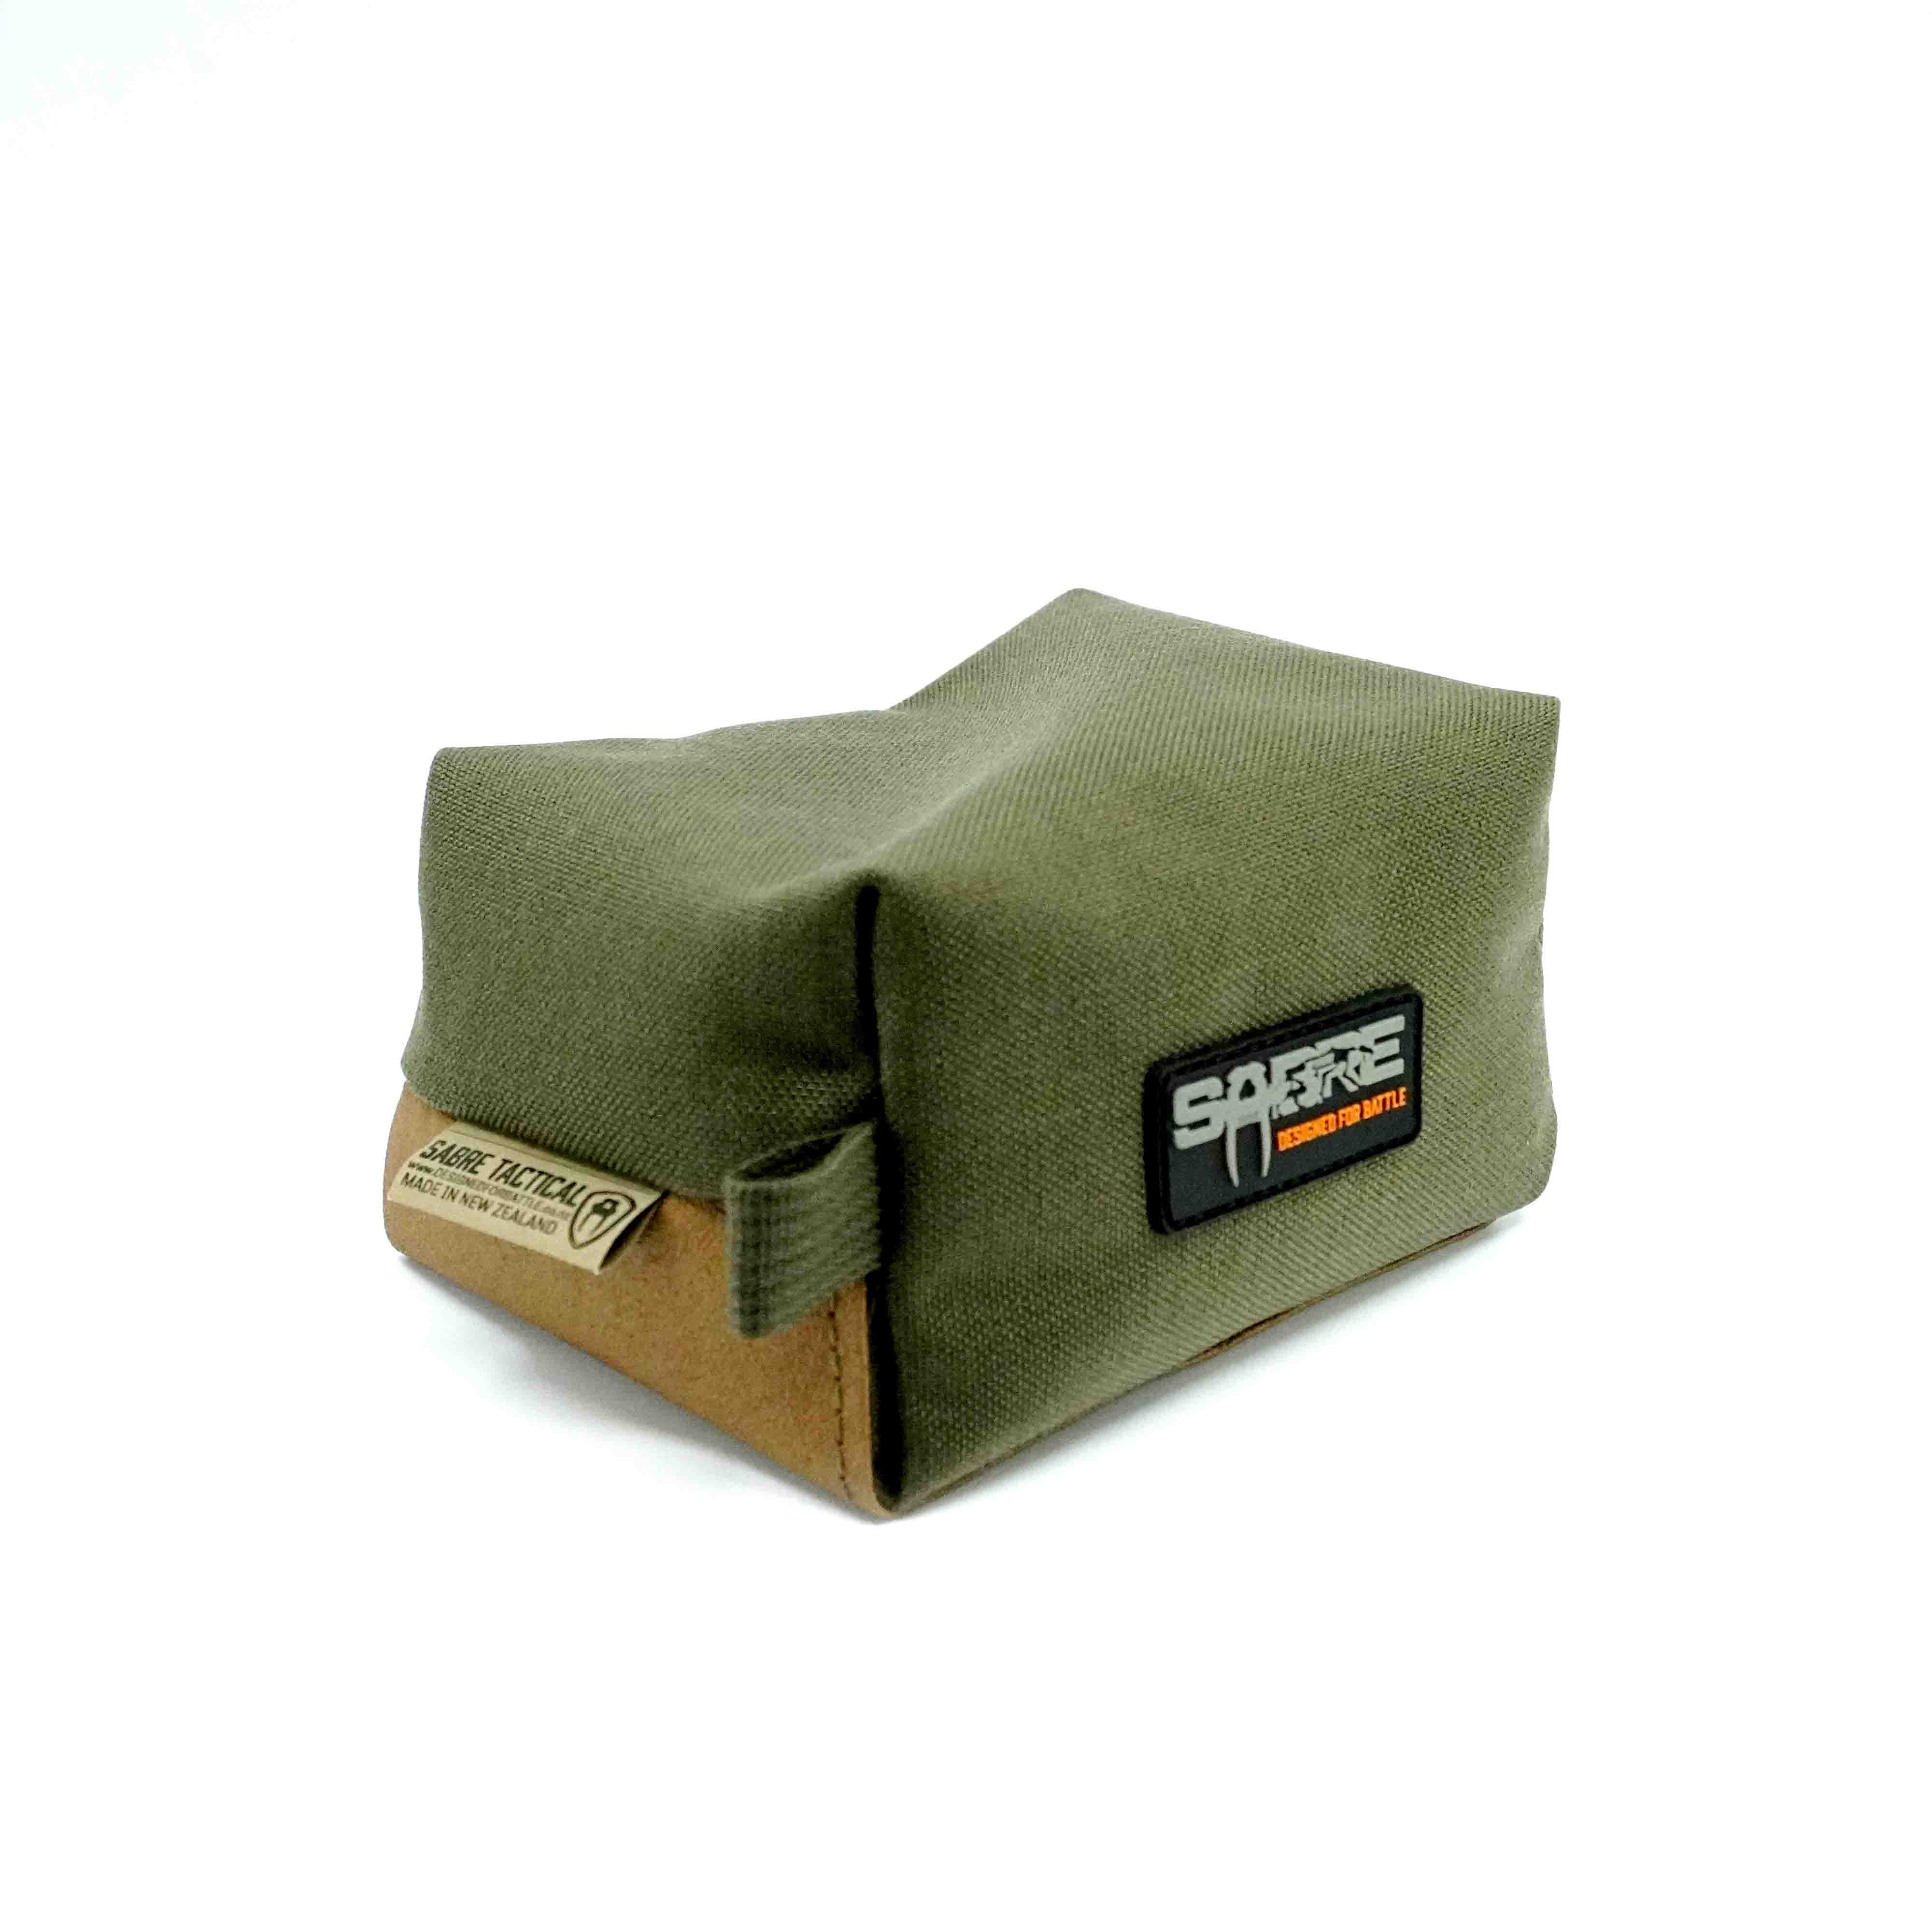 Order VIPER Competition Shooting Rest Bag Online - Crosstac Corporation